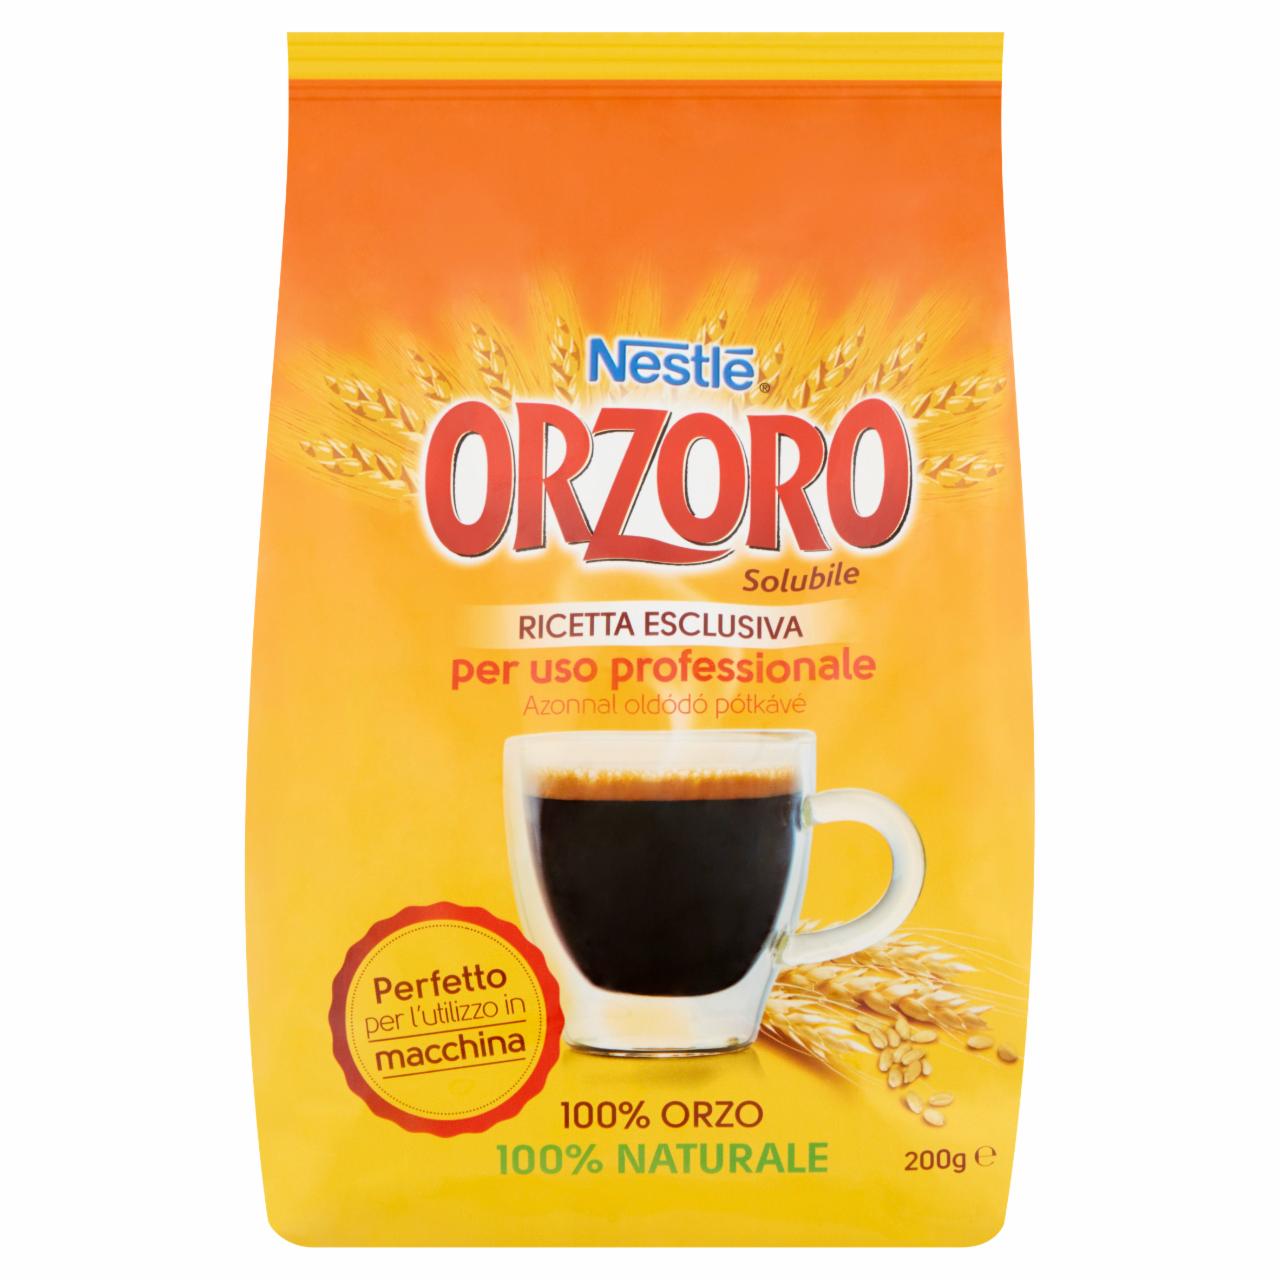 Képek - Nestlé Orzoro azonnal oldódó pótkávé 200 g